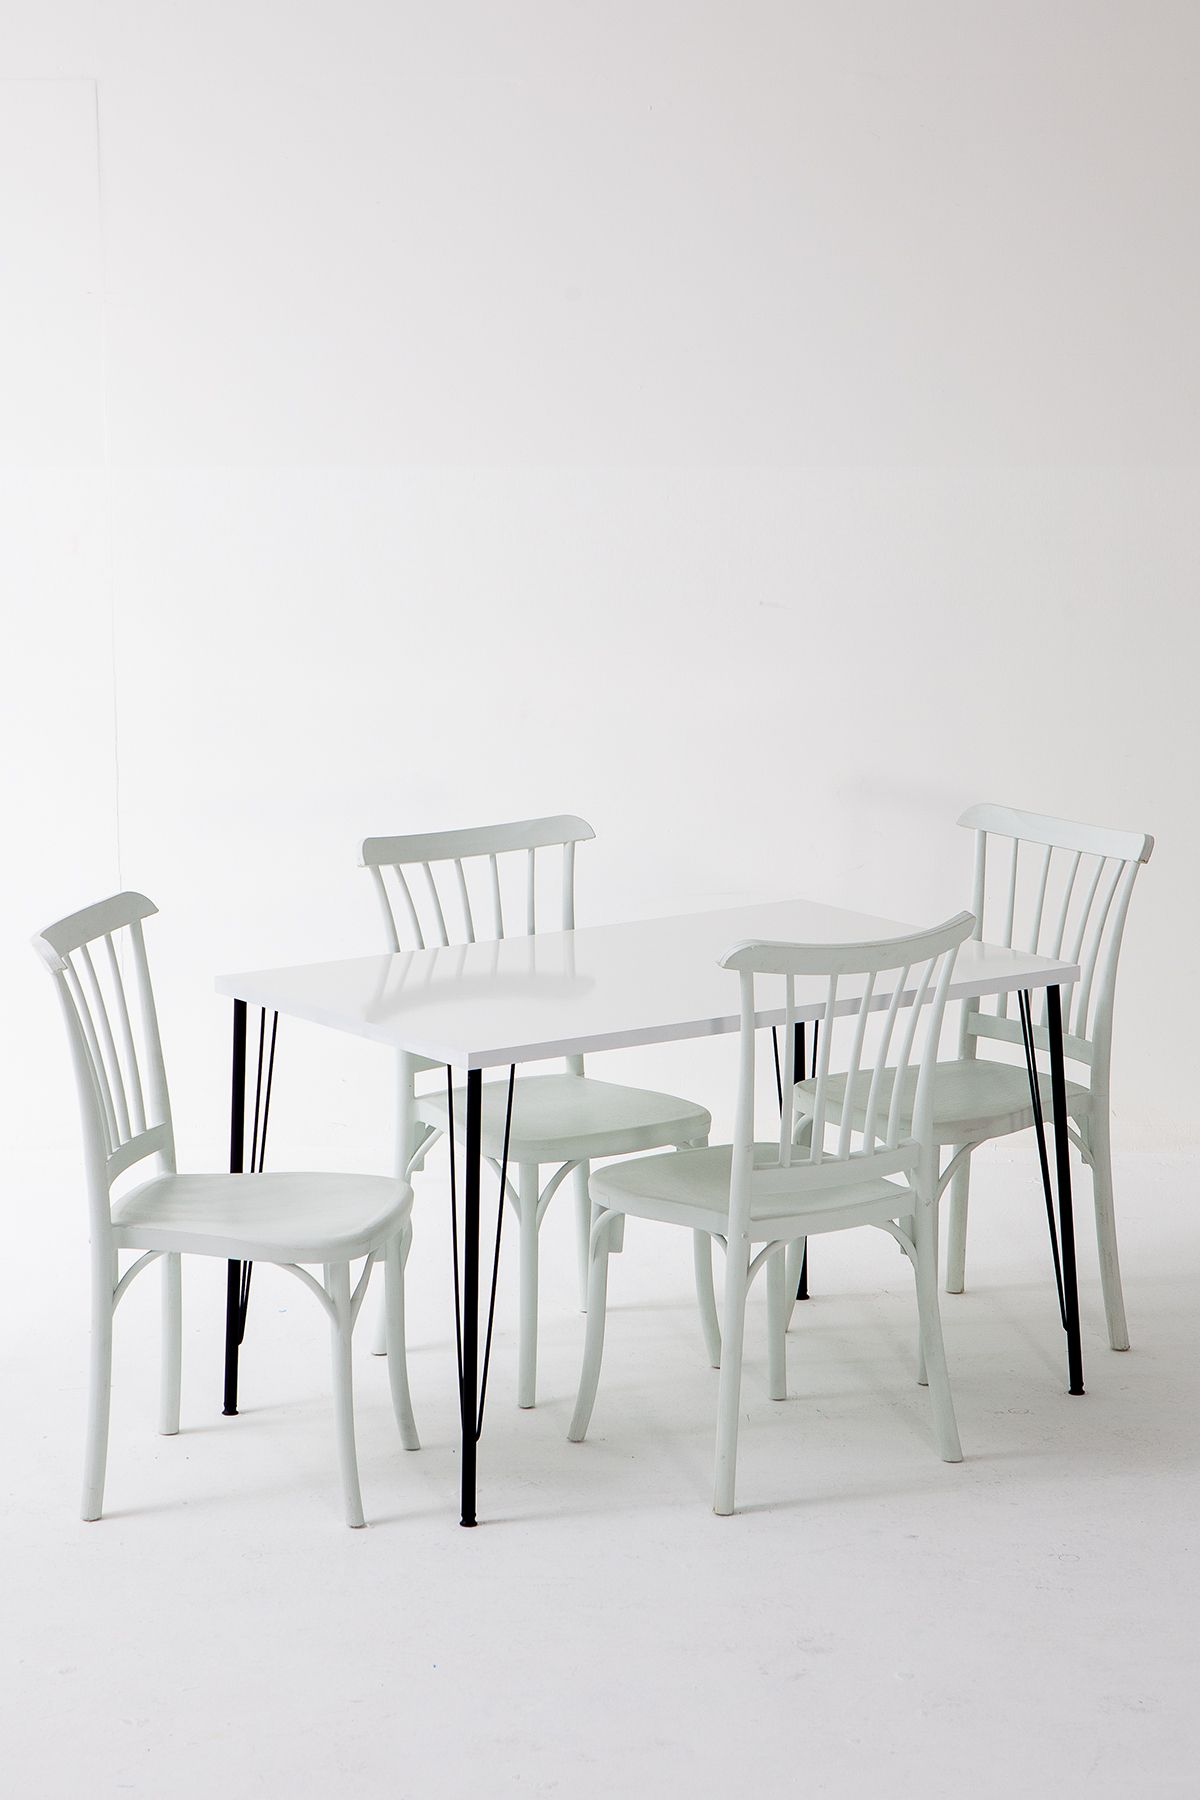 Modalife Nero Beyaz Masa 75x110 cm Violet Beyaz Sandalye Mutfak Masa Takımı